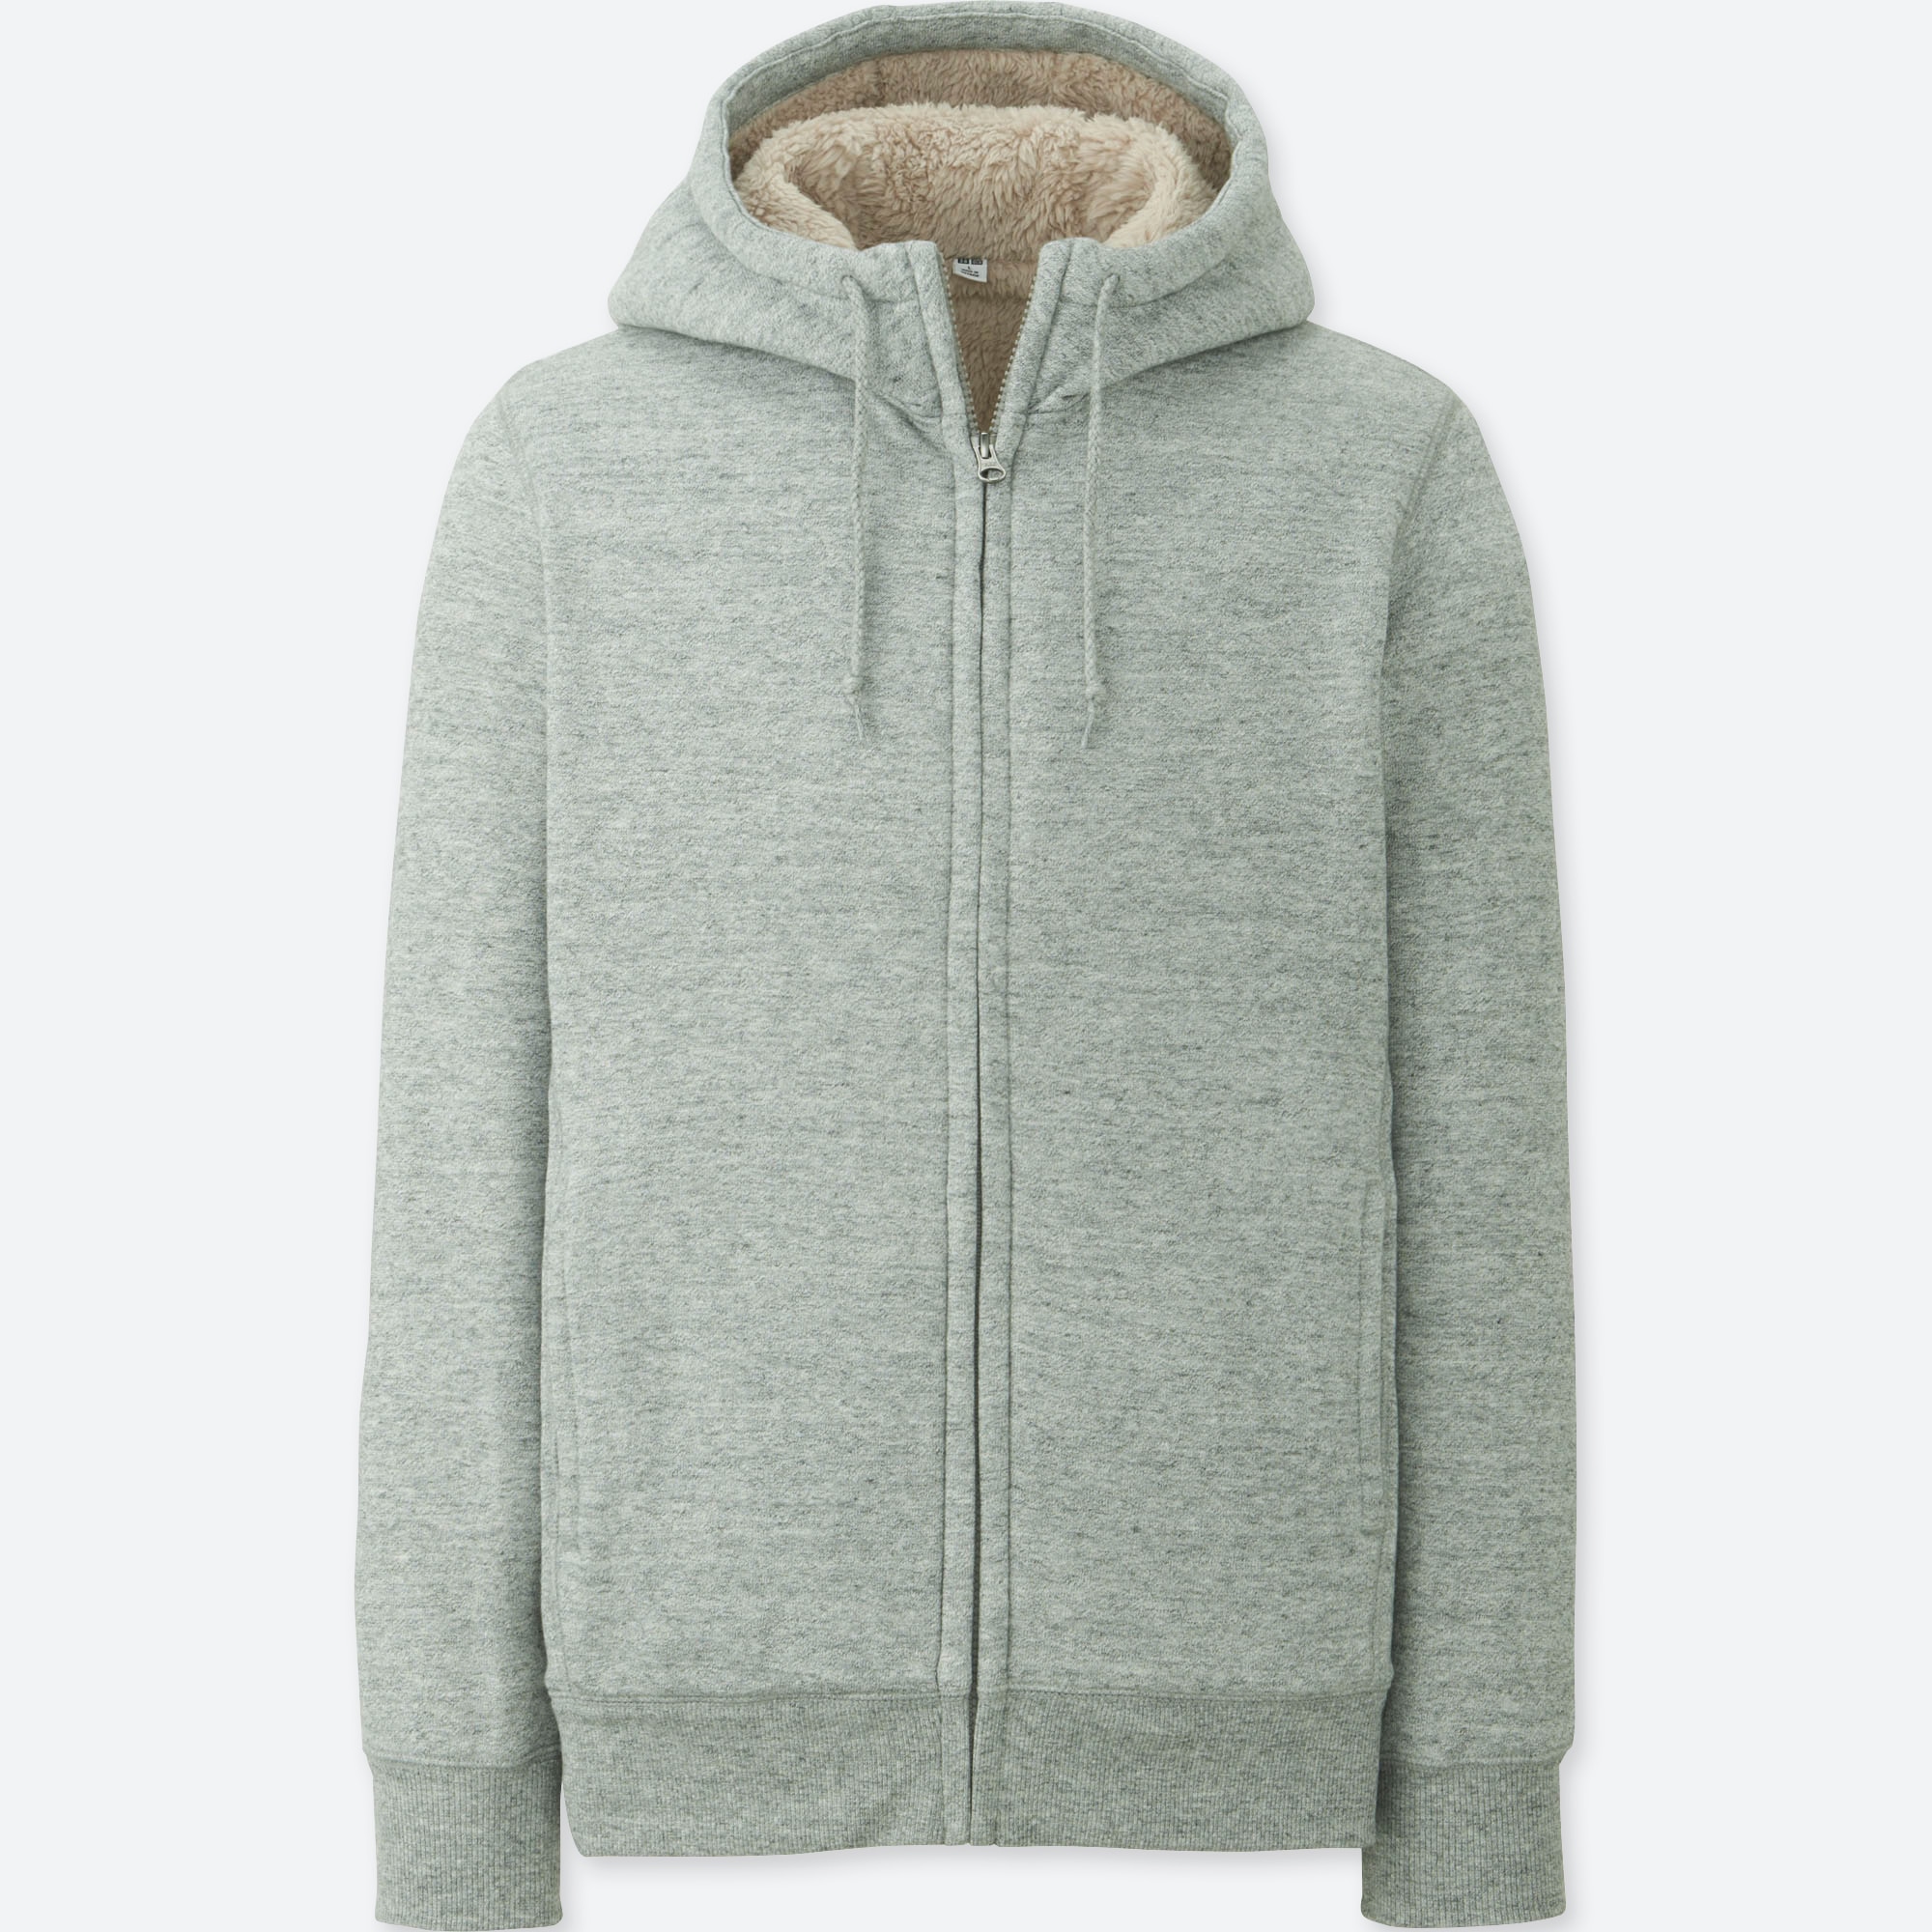 fleece lined full zip hoodie